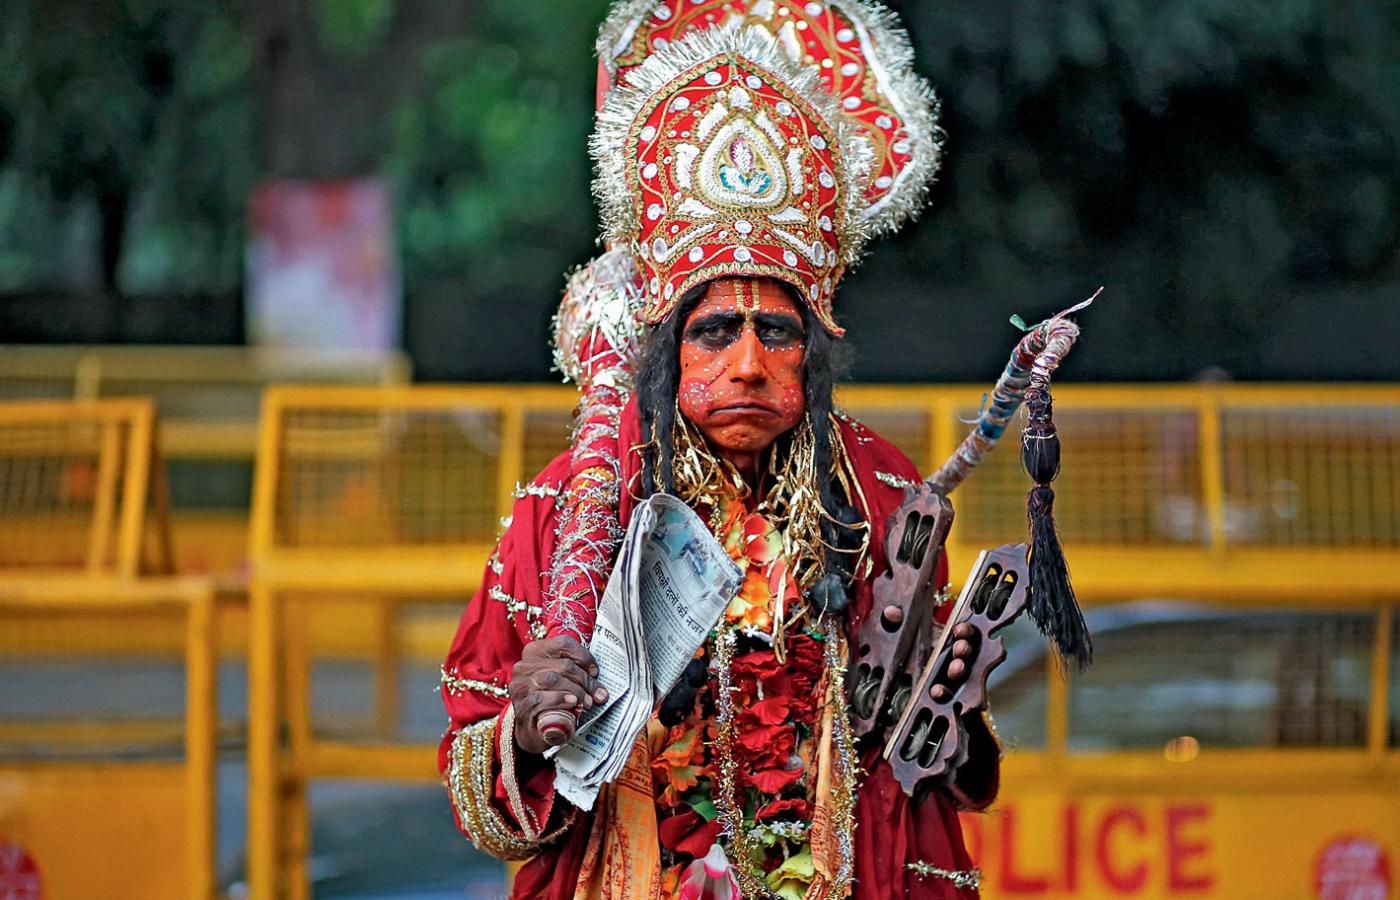 Zwolennik rządzącej BJP w stroju króla małp Hanumana, oddanego sługi Ramy, przed siedzibą partii w Delhi